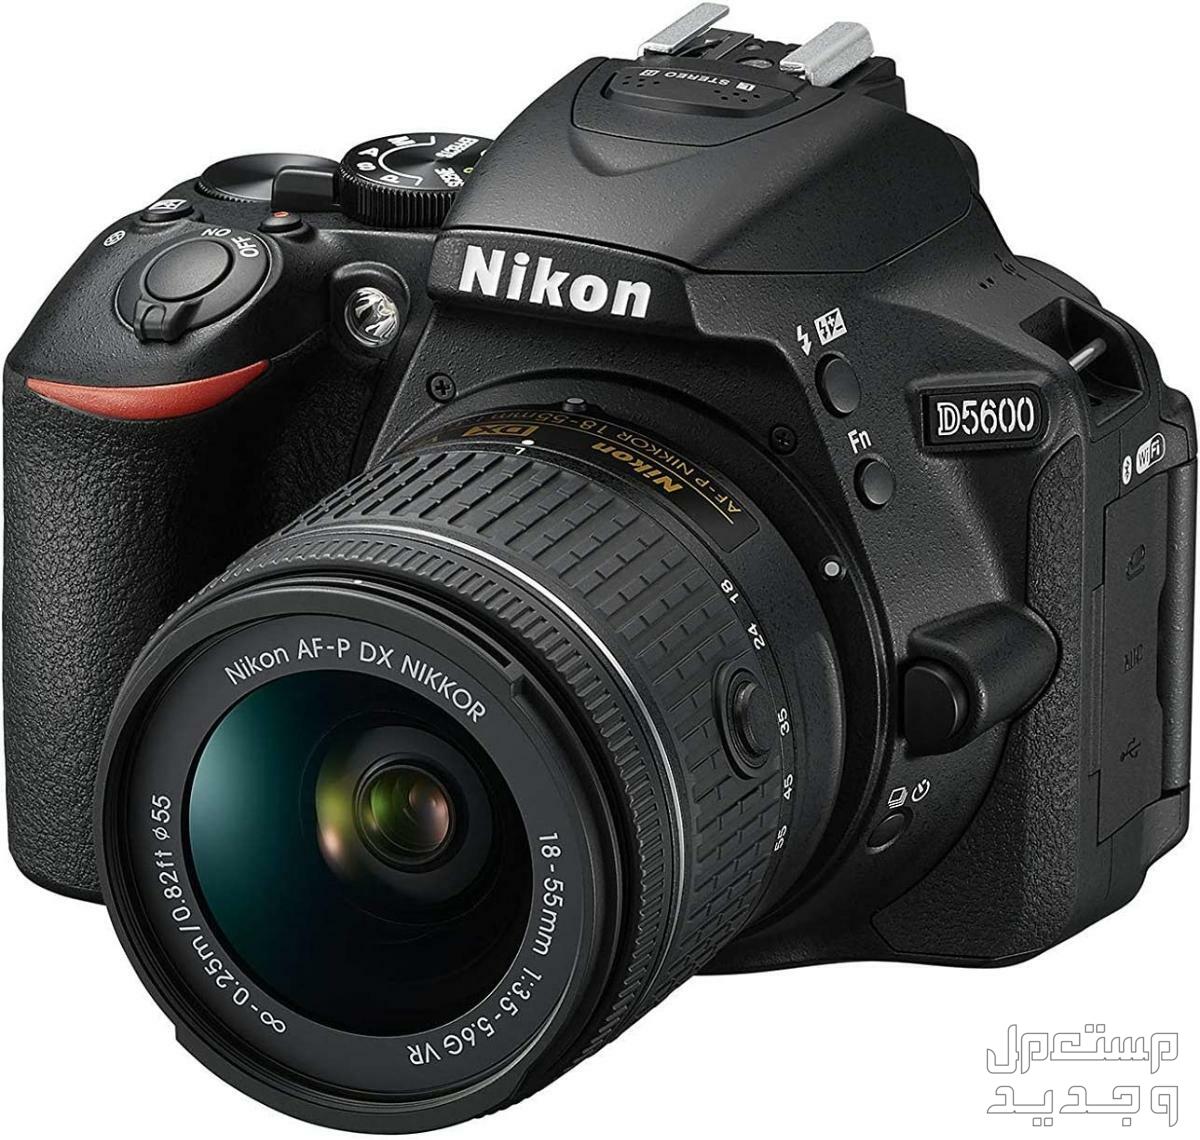 10 كاميرات تصوير ماركات عالمية بأسعار رخيصة في قطر كاميرا Nikon D5600